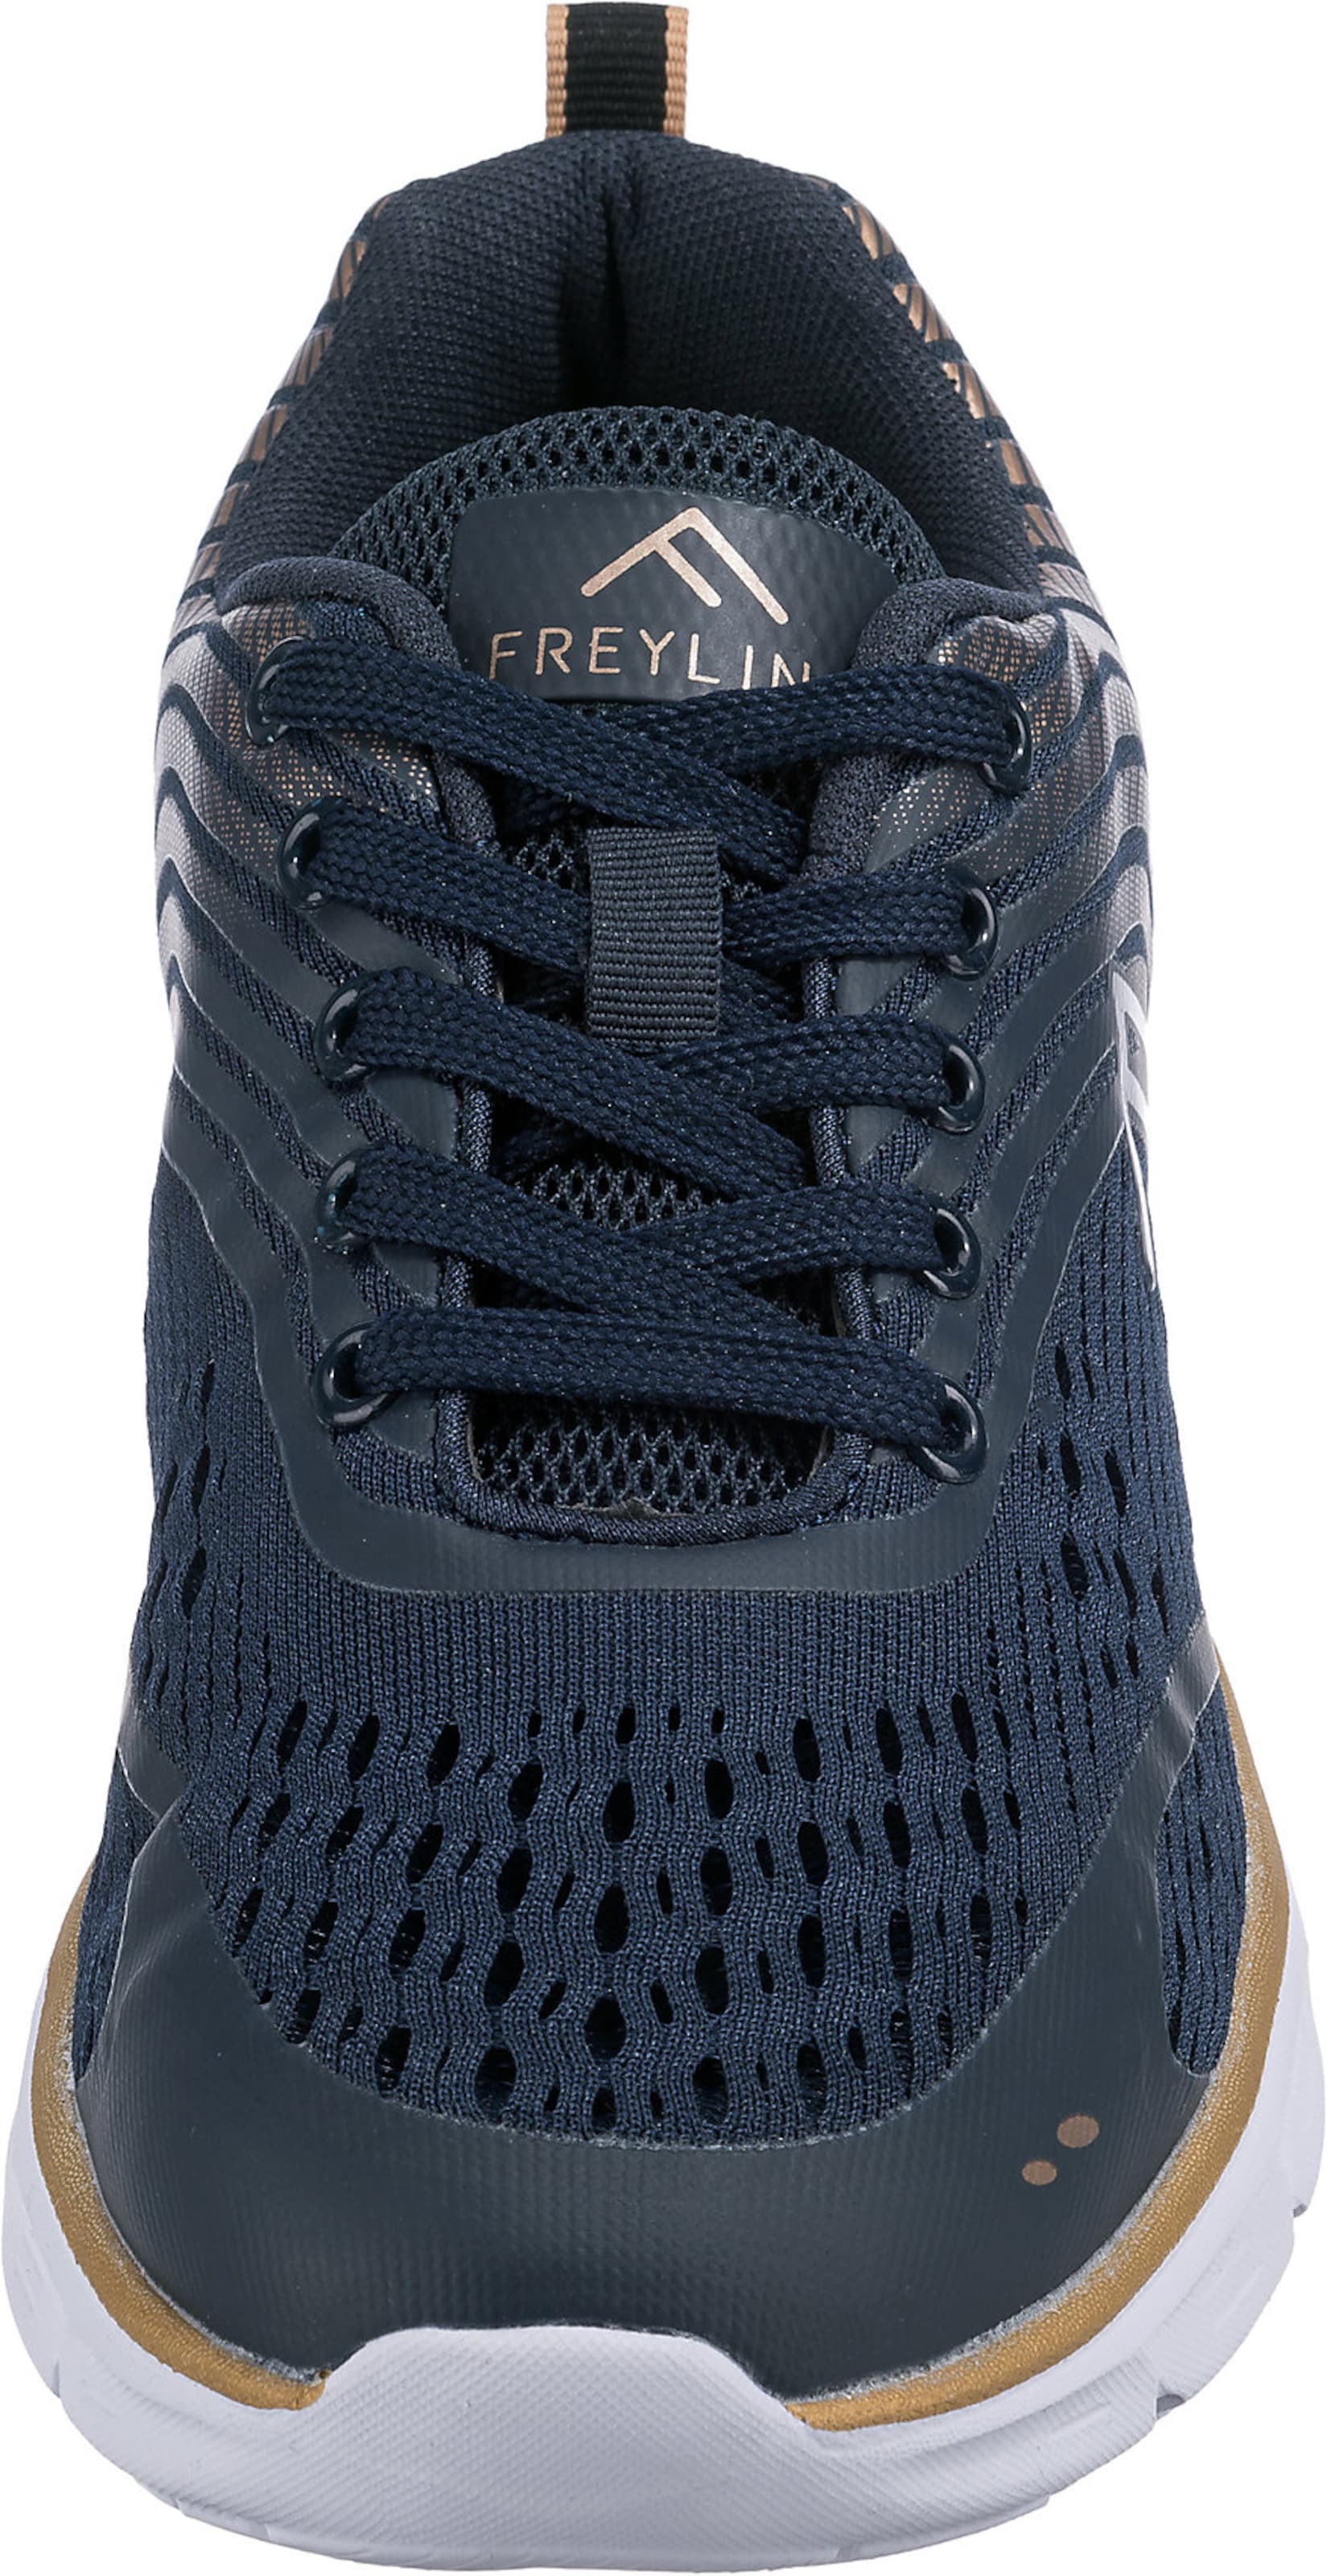 Frauen Sneaker Freyling Sneaker in Navy - XL46264